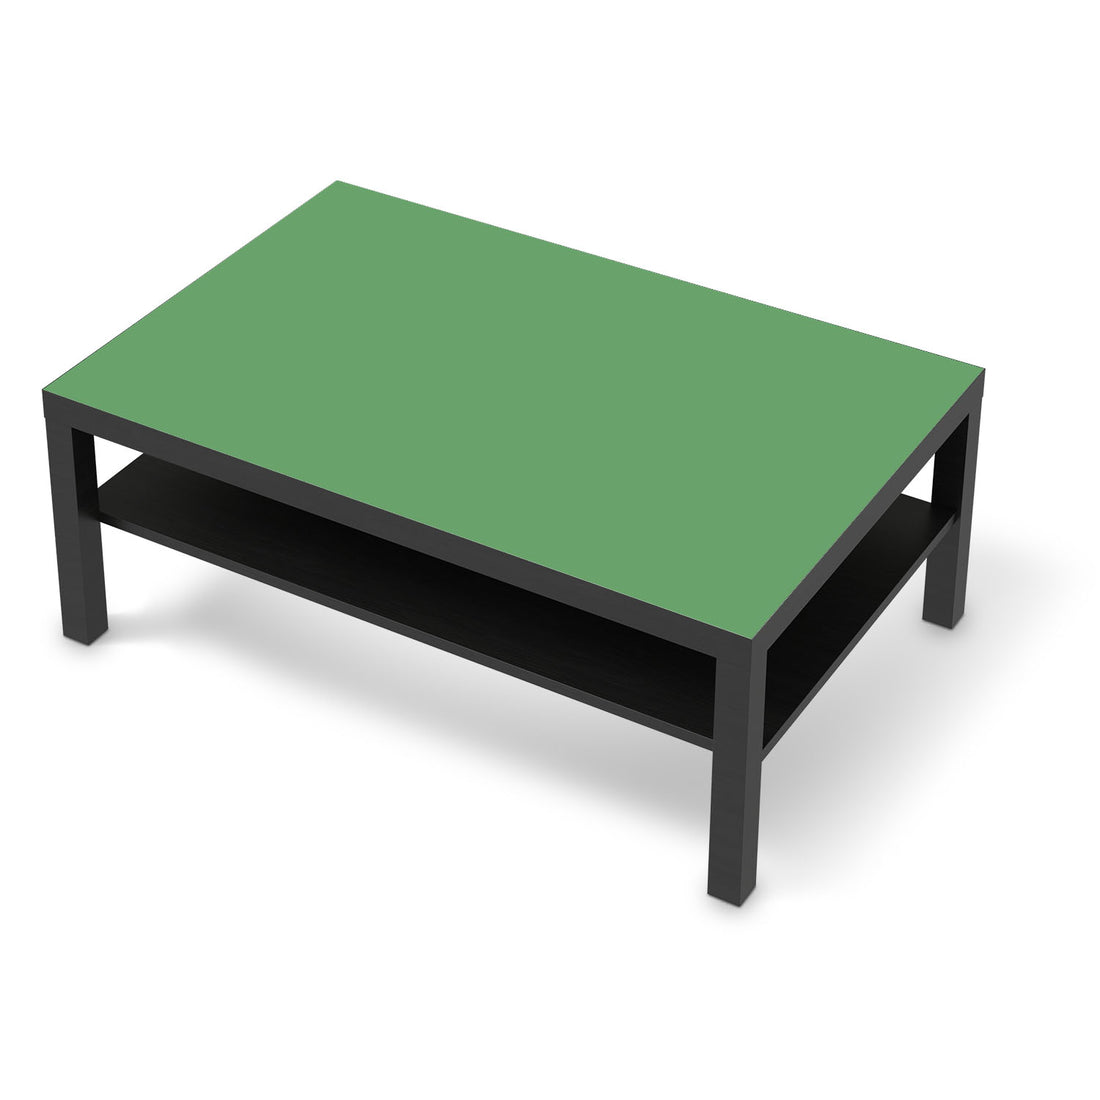 Klebefolie Grün Light - IKEA Lack Tisch 118x78 cm - schwarz